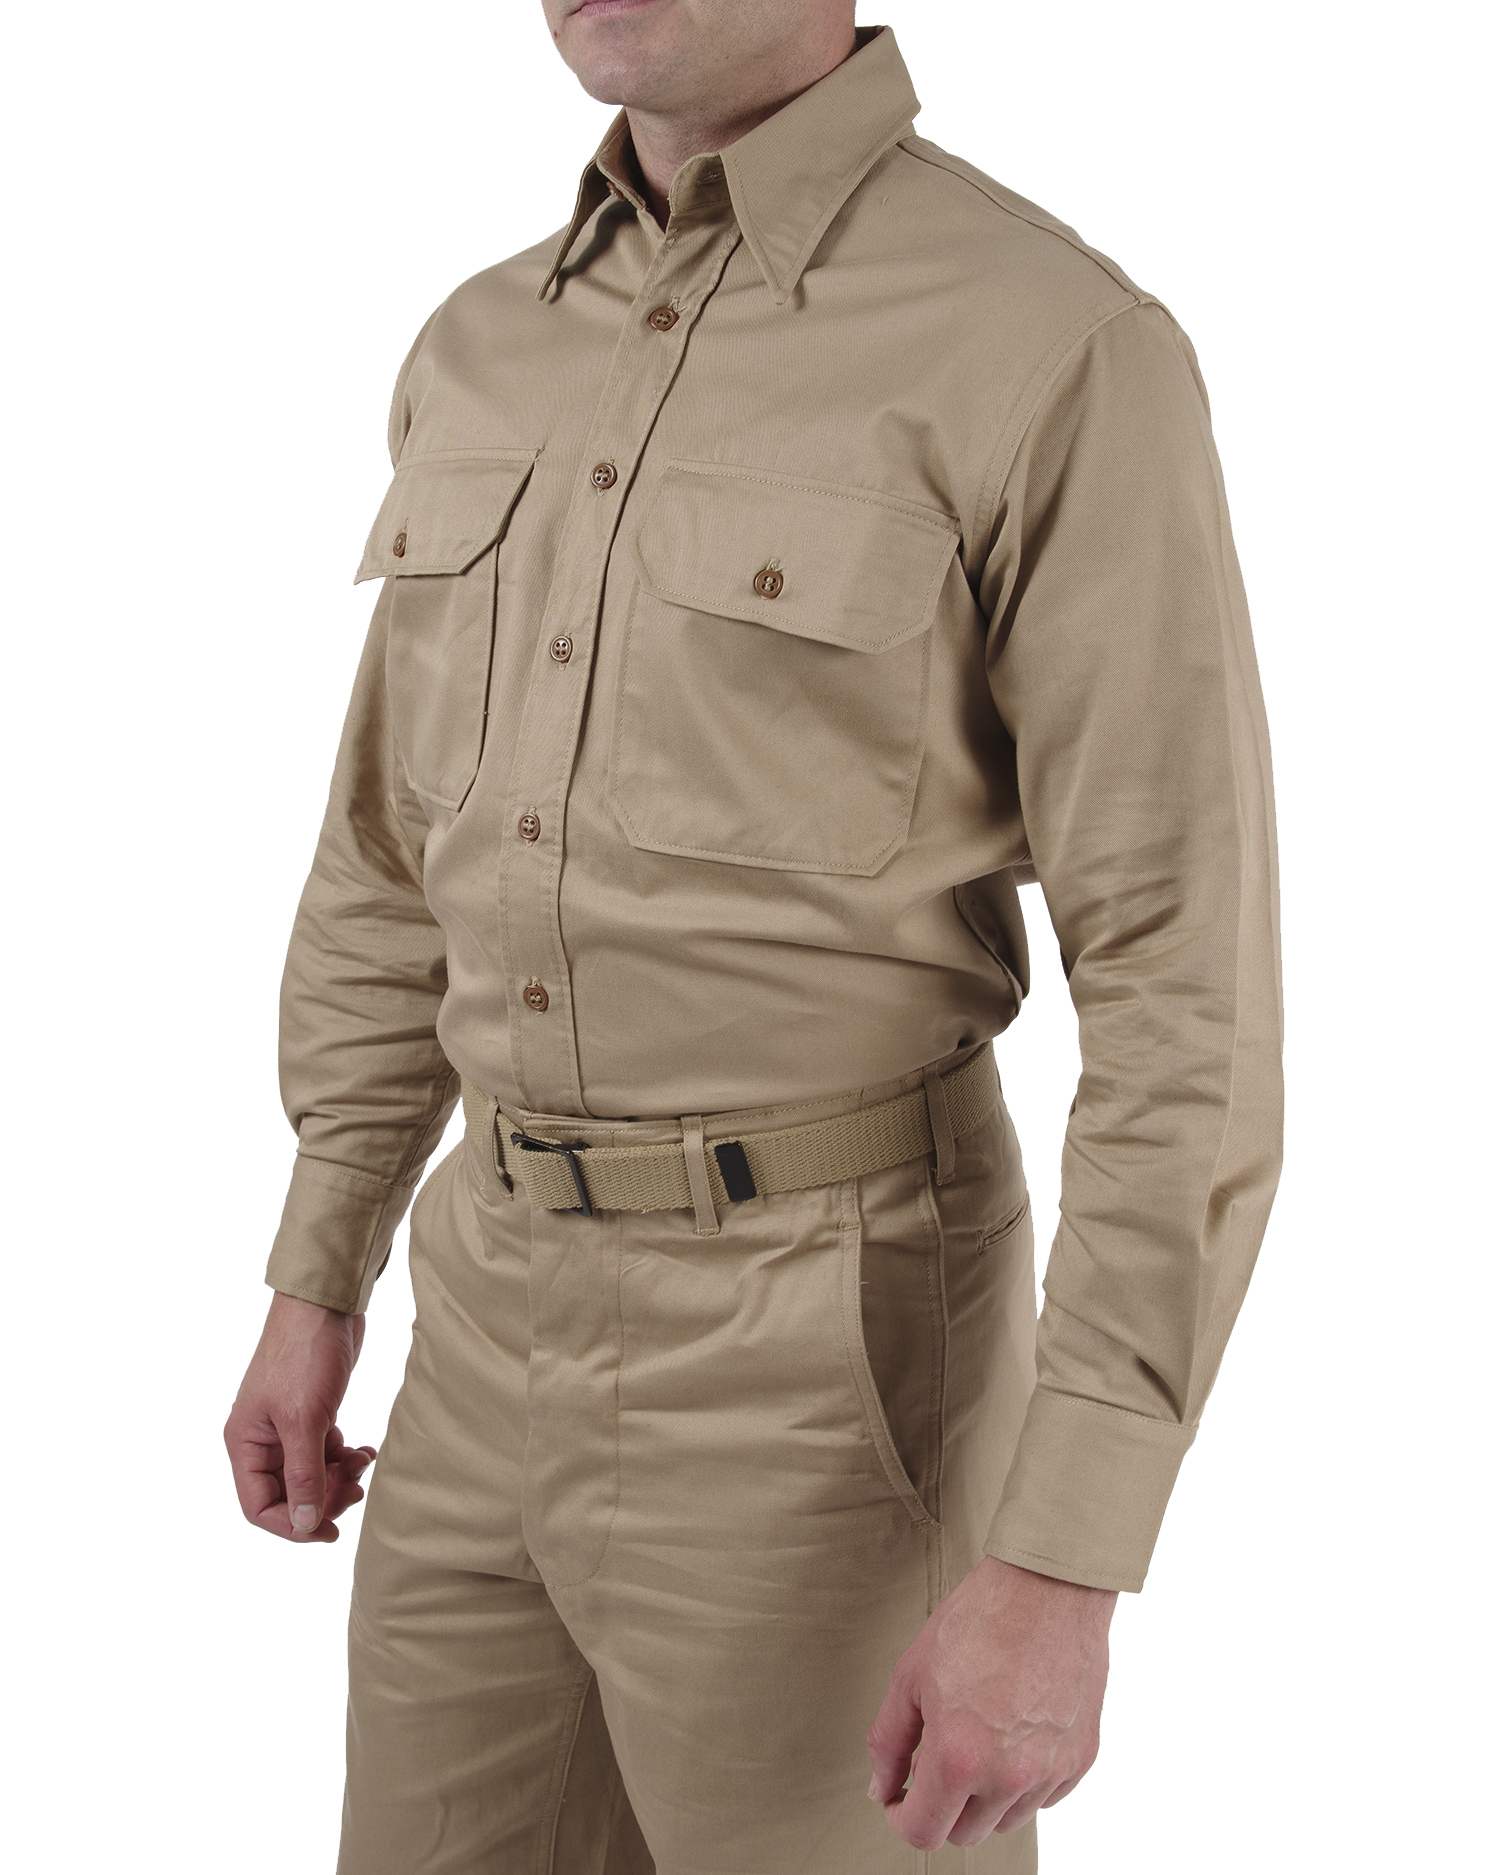 US WWII Army Khaki Shirt